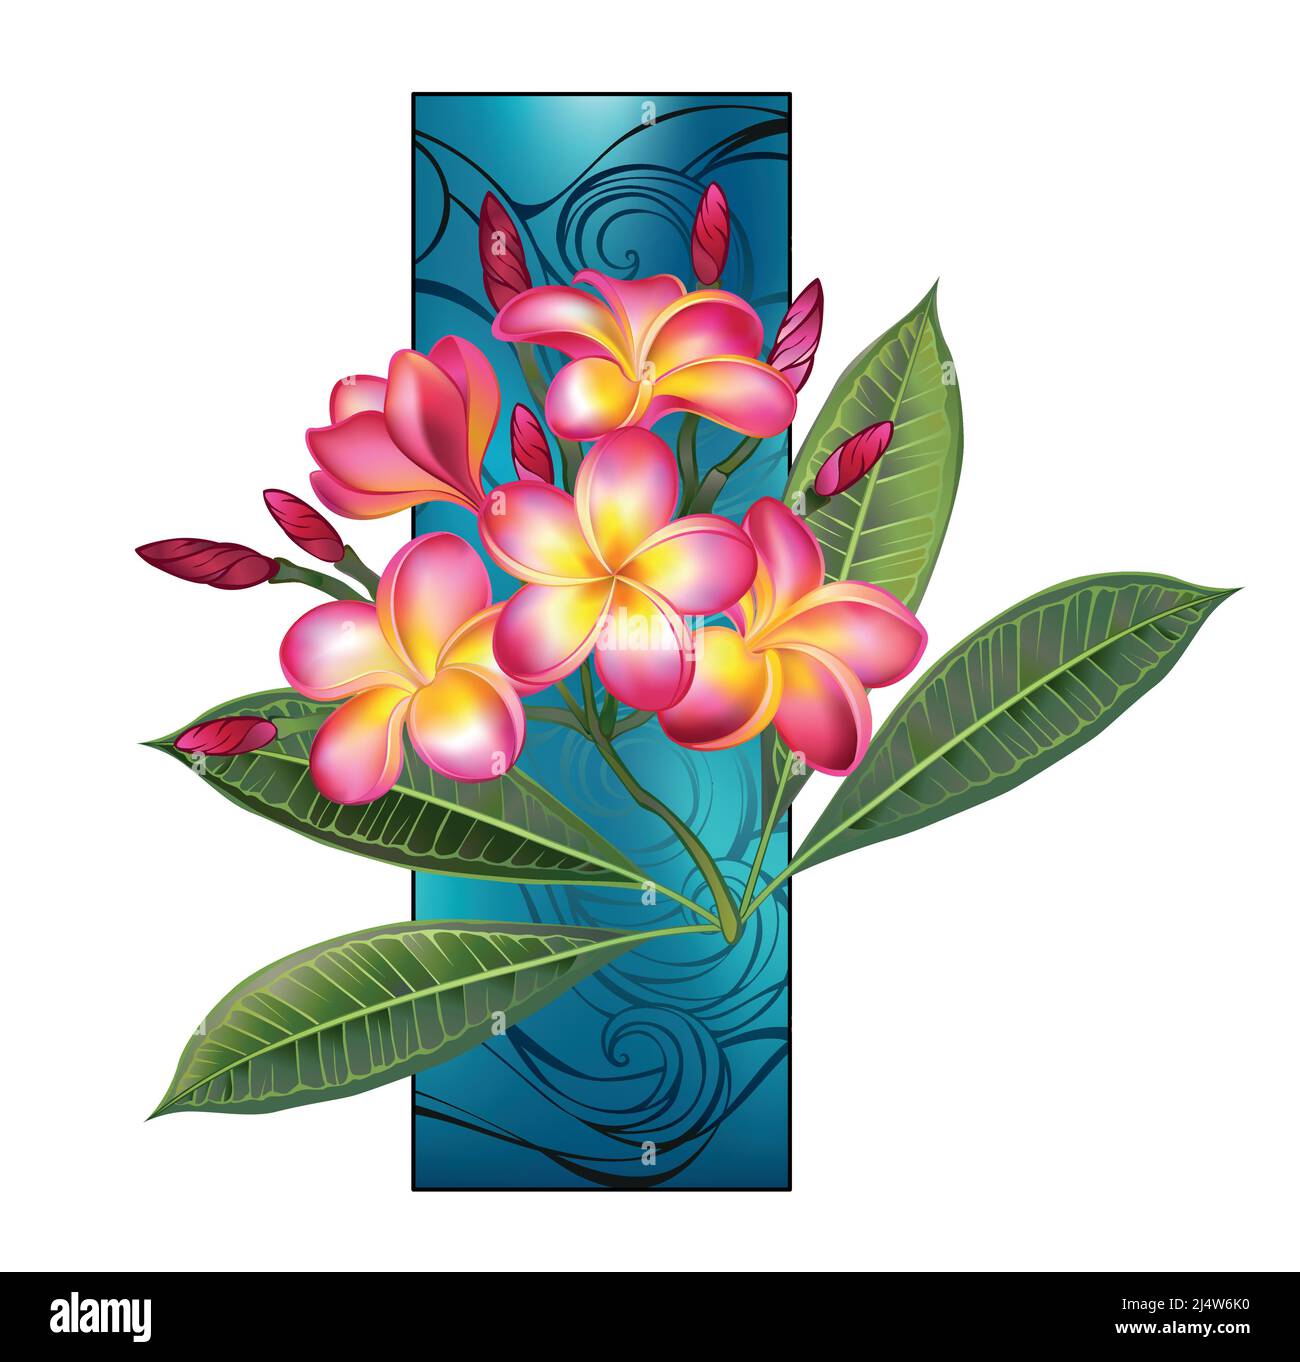 Branche de plumeria dessinée artistiquement avec des feuilles vertes et des fleurs roses en fleur contre bleu, rectangle marin. Illustration de Vecteur